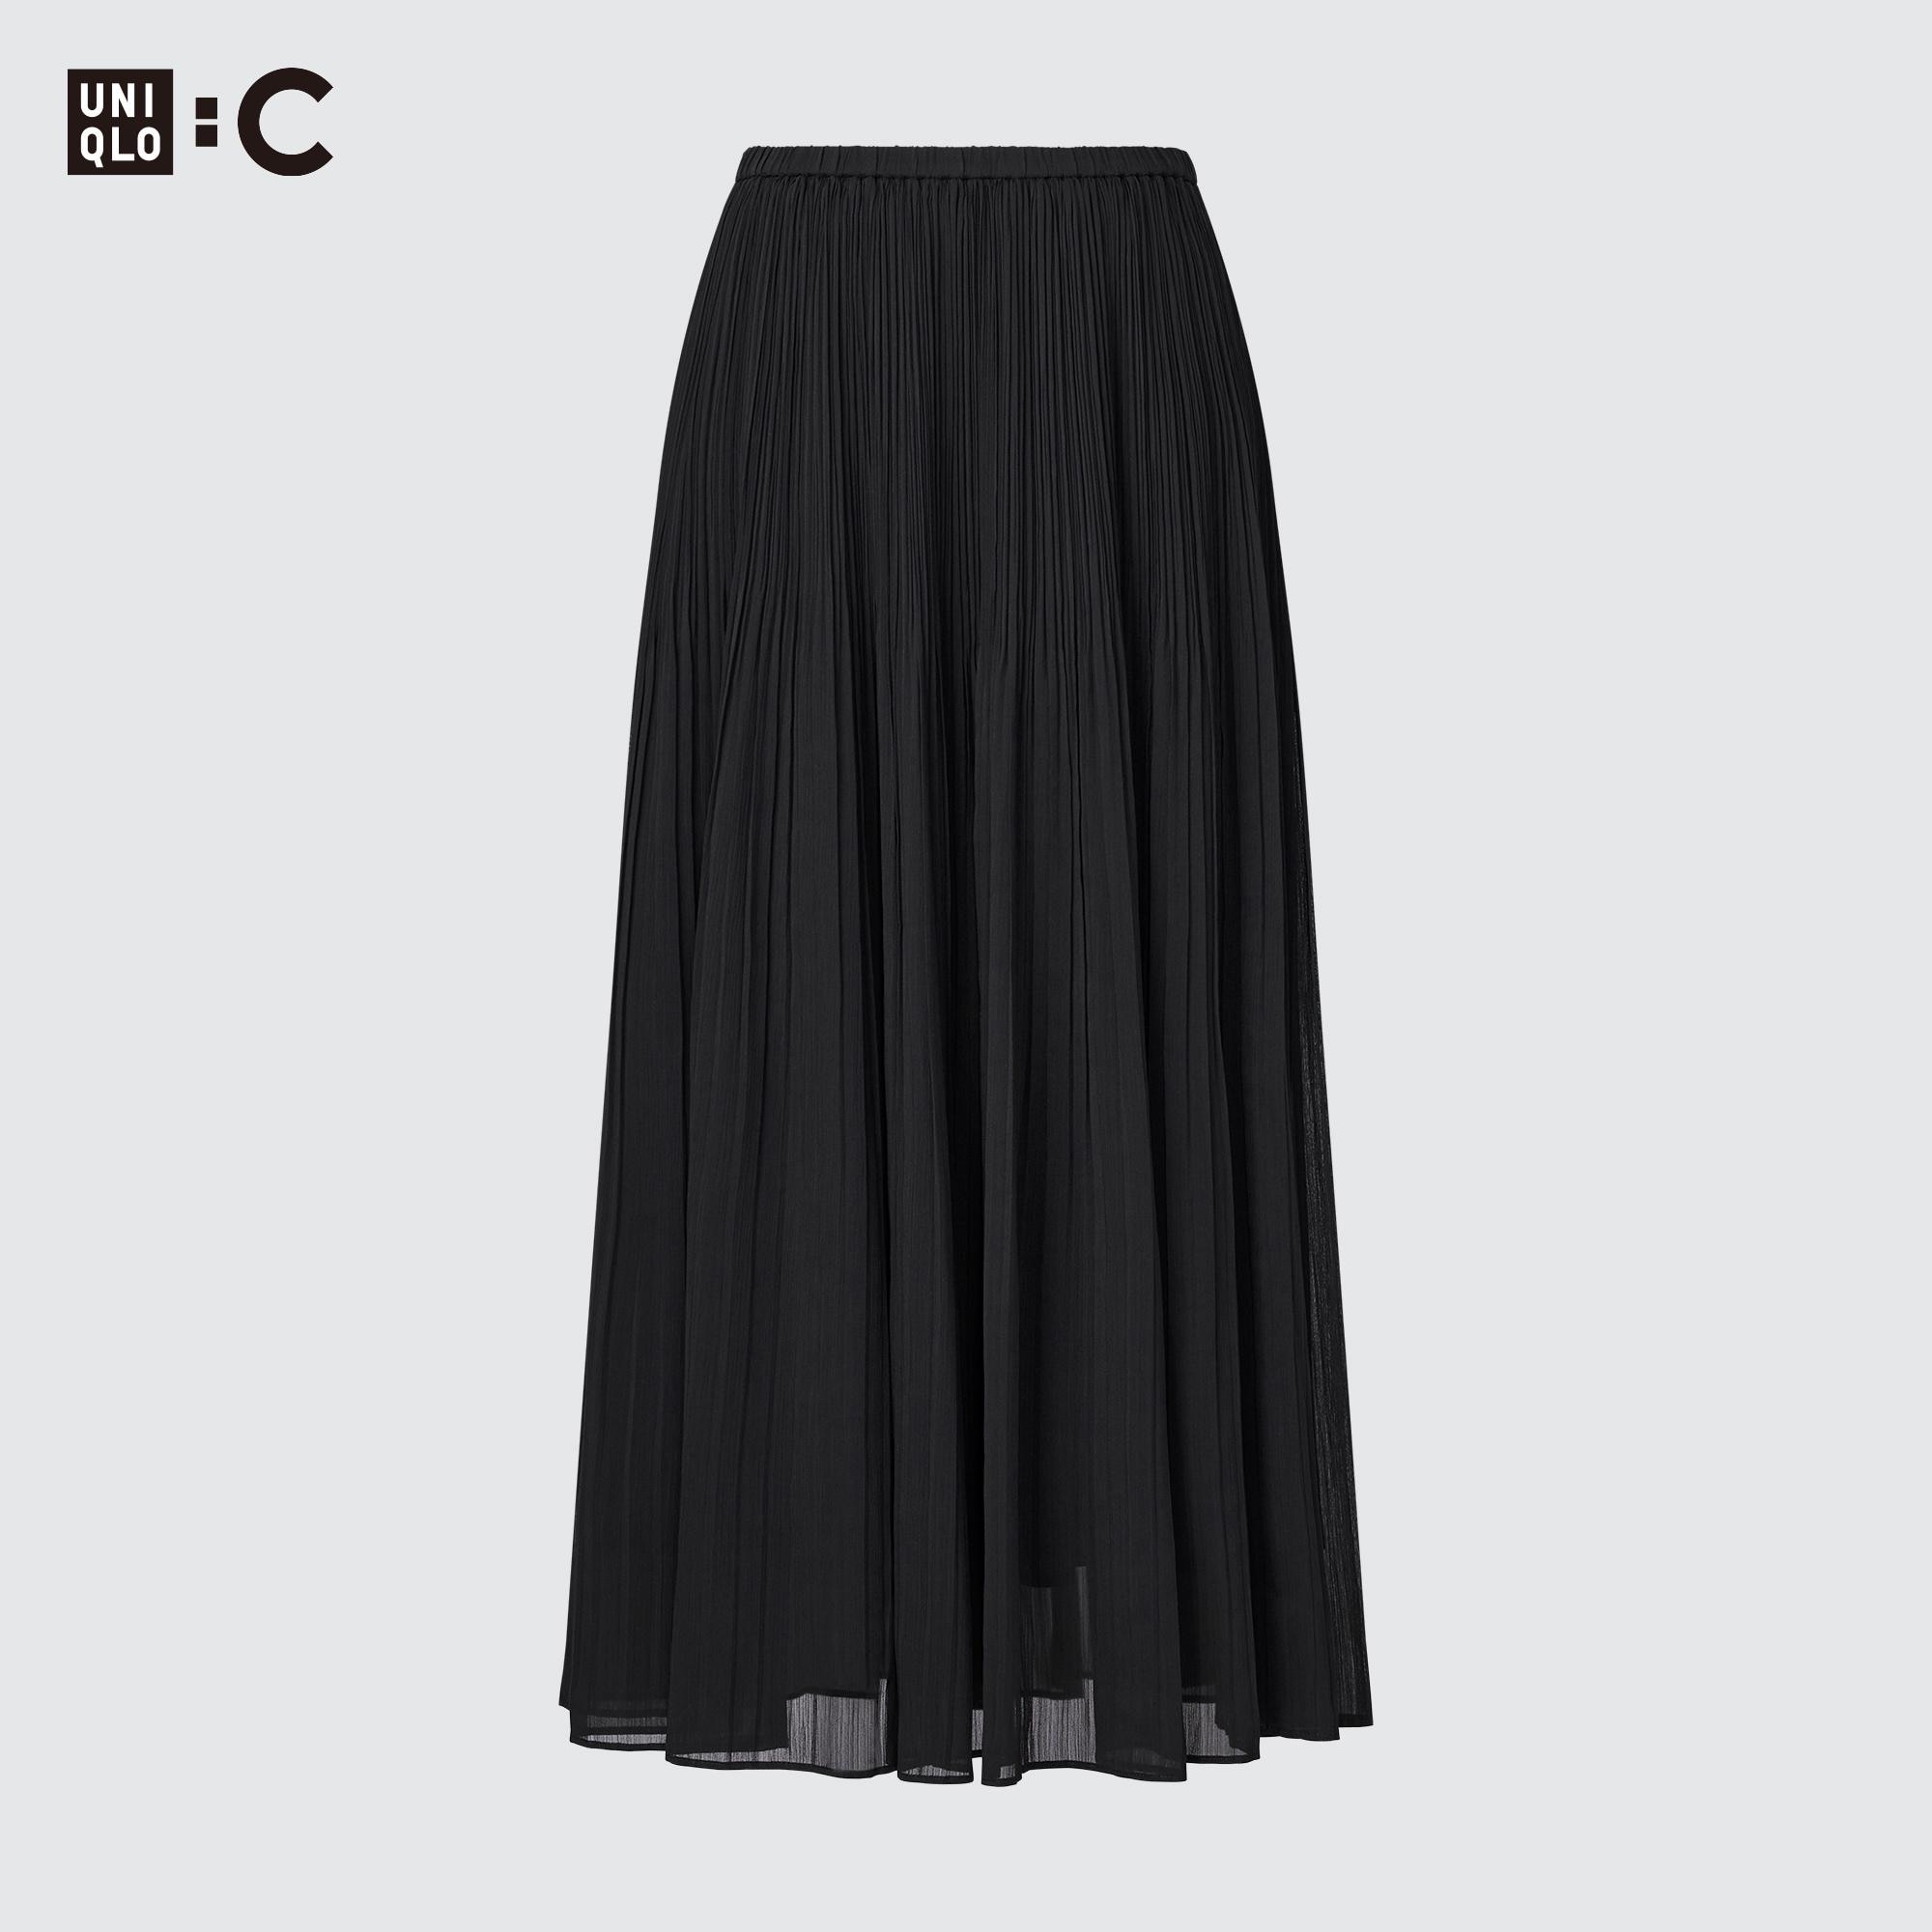 ユニクロ UNIQLO : C シフォンプリーツスカート - ロングスカート